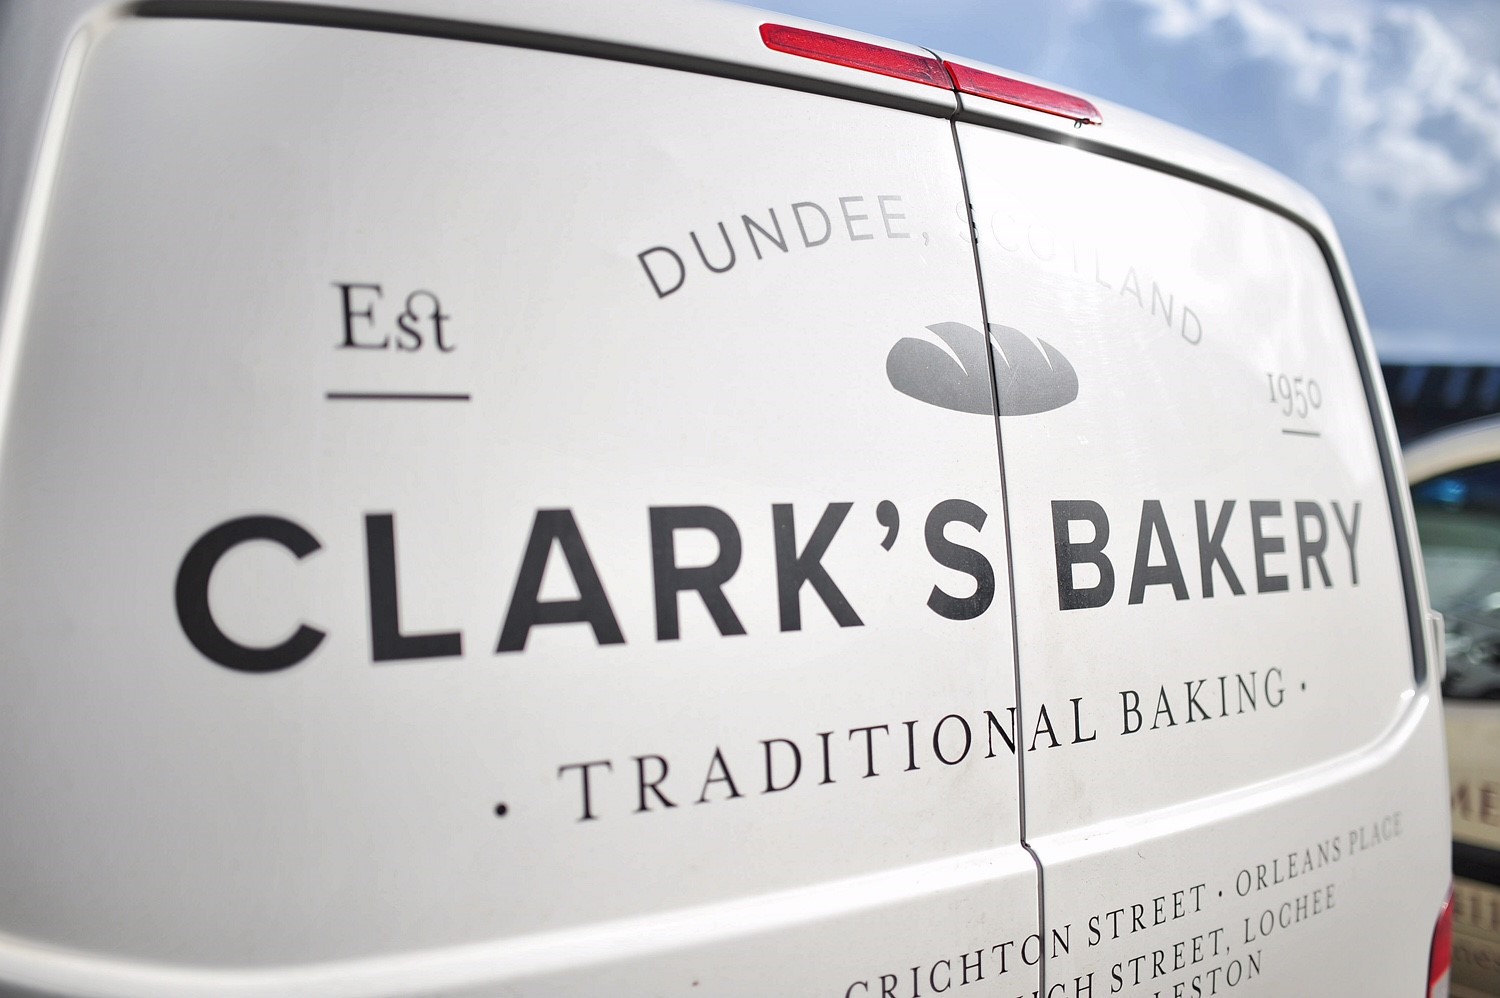 ClarksBakery-Dundee-1